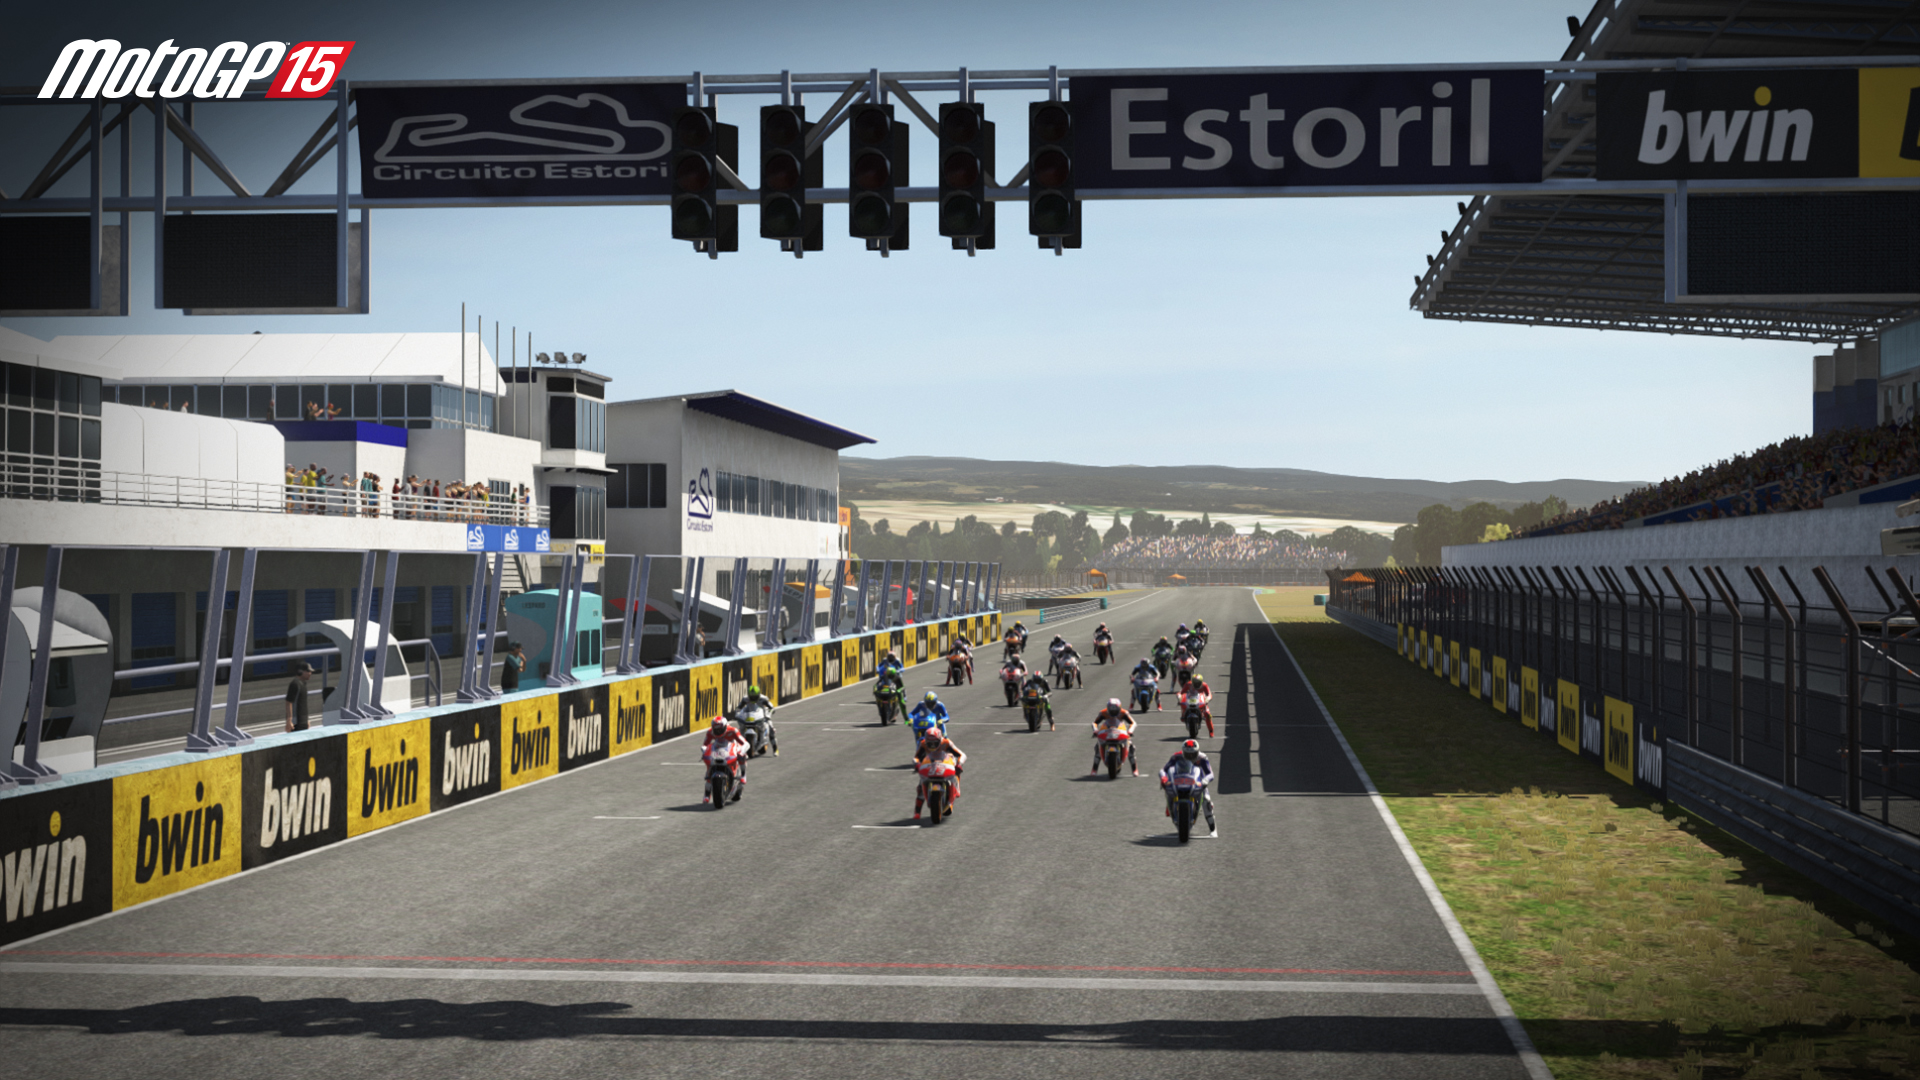 MotoGP15 GP de Portugal Circuito Estoril screenshot